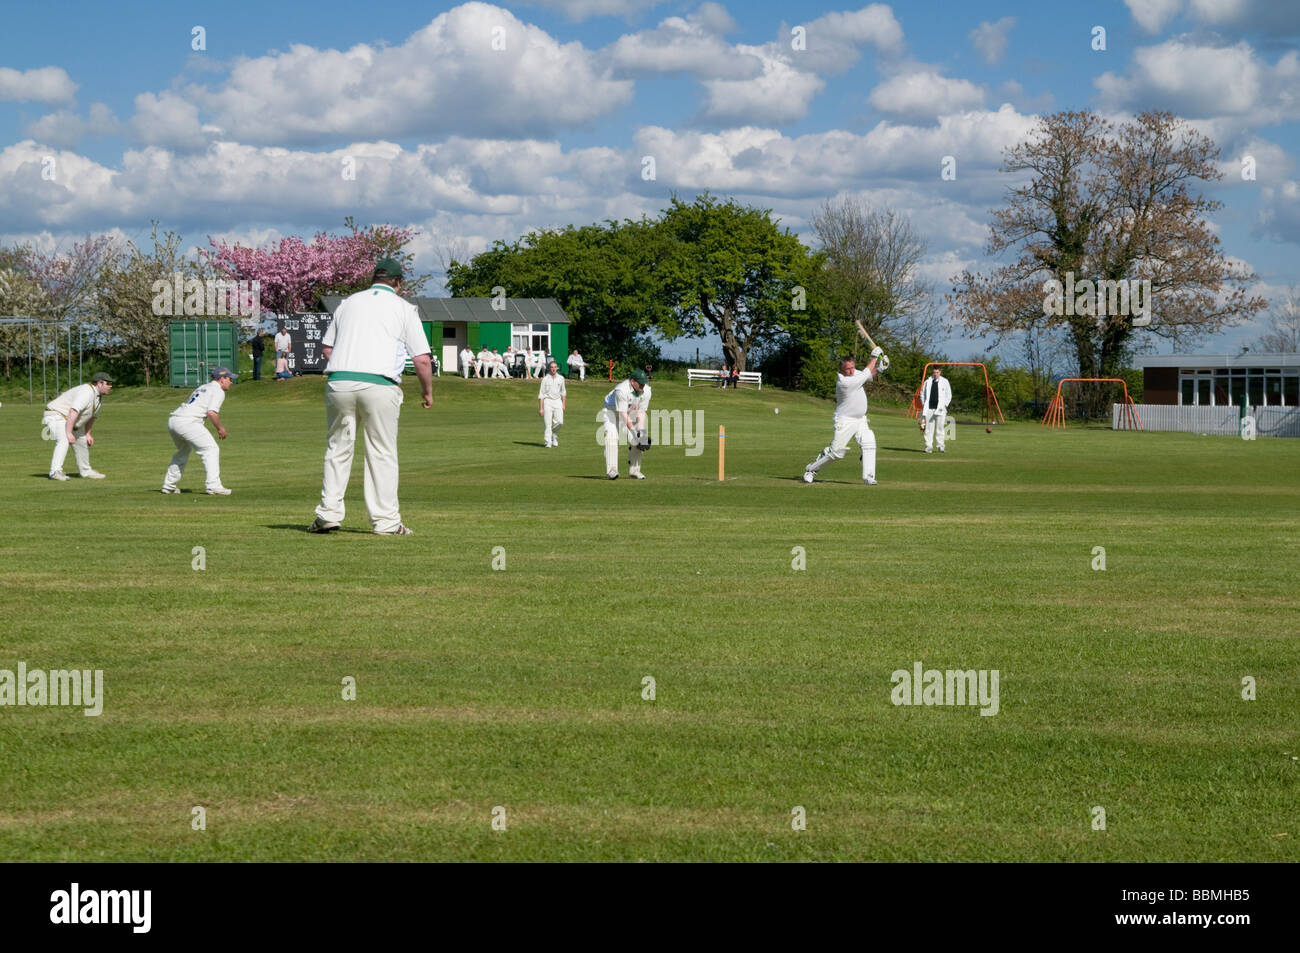 Jeu de Cricket joué en Angleterre Derbyshire Peak District Banque D'Images